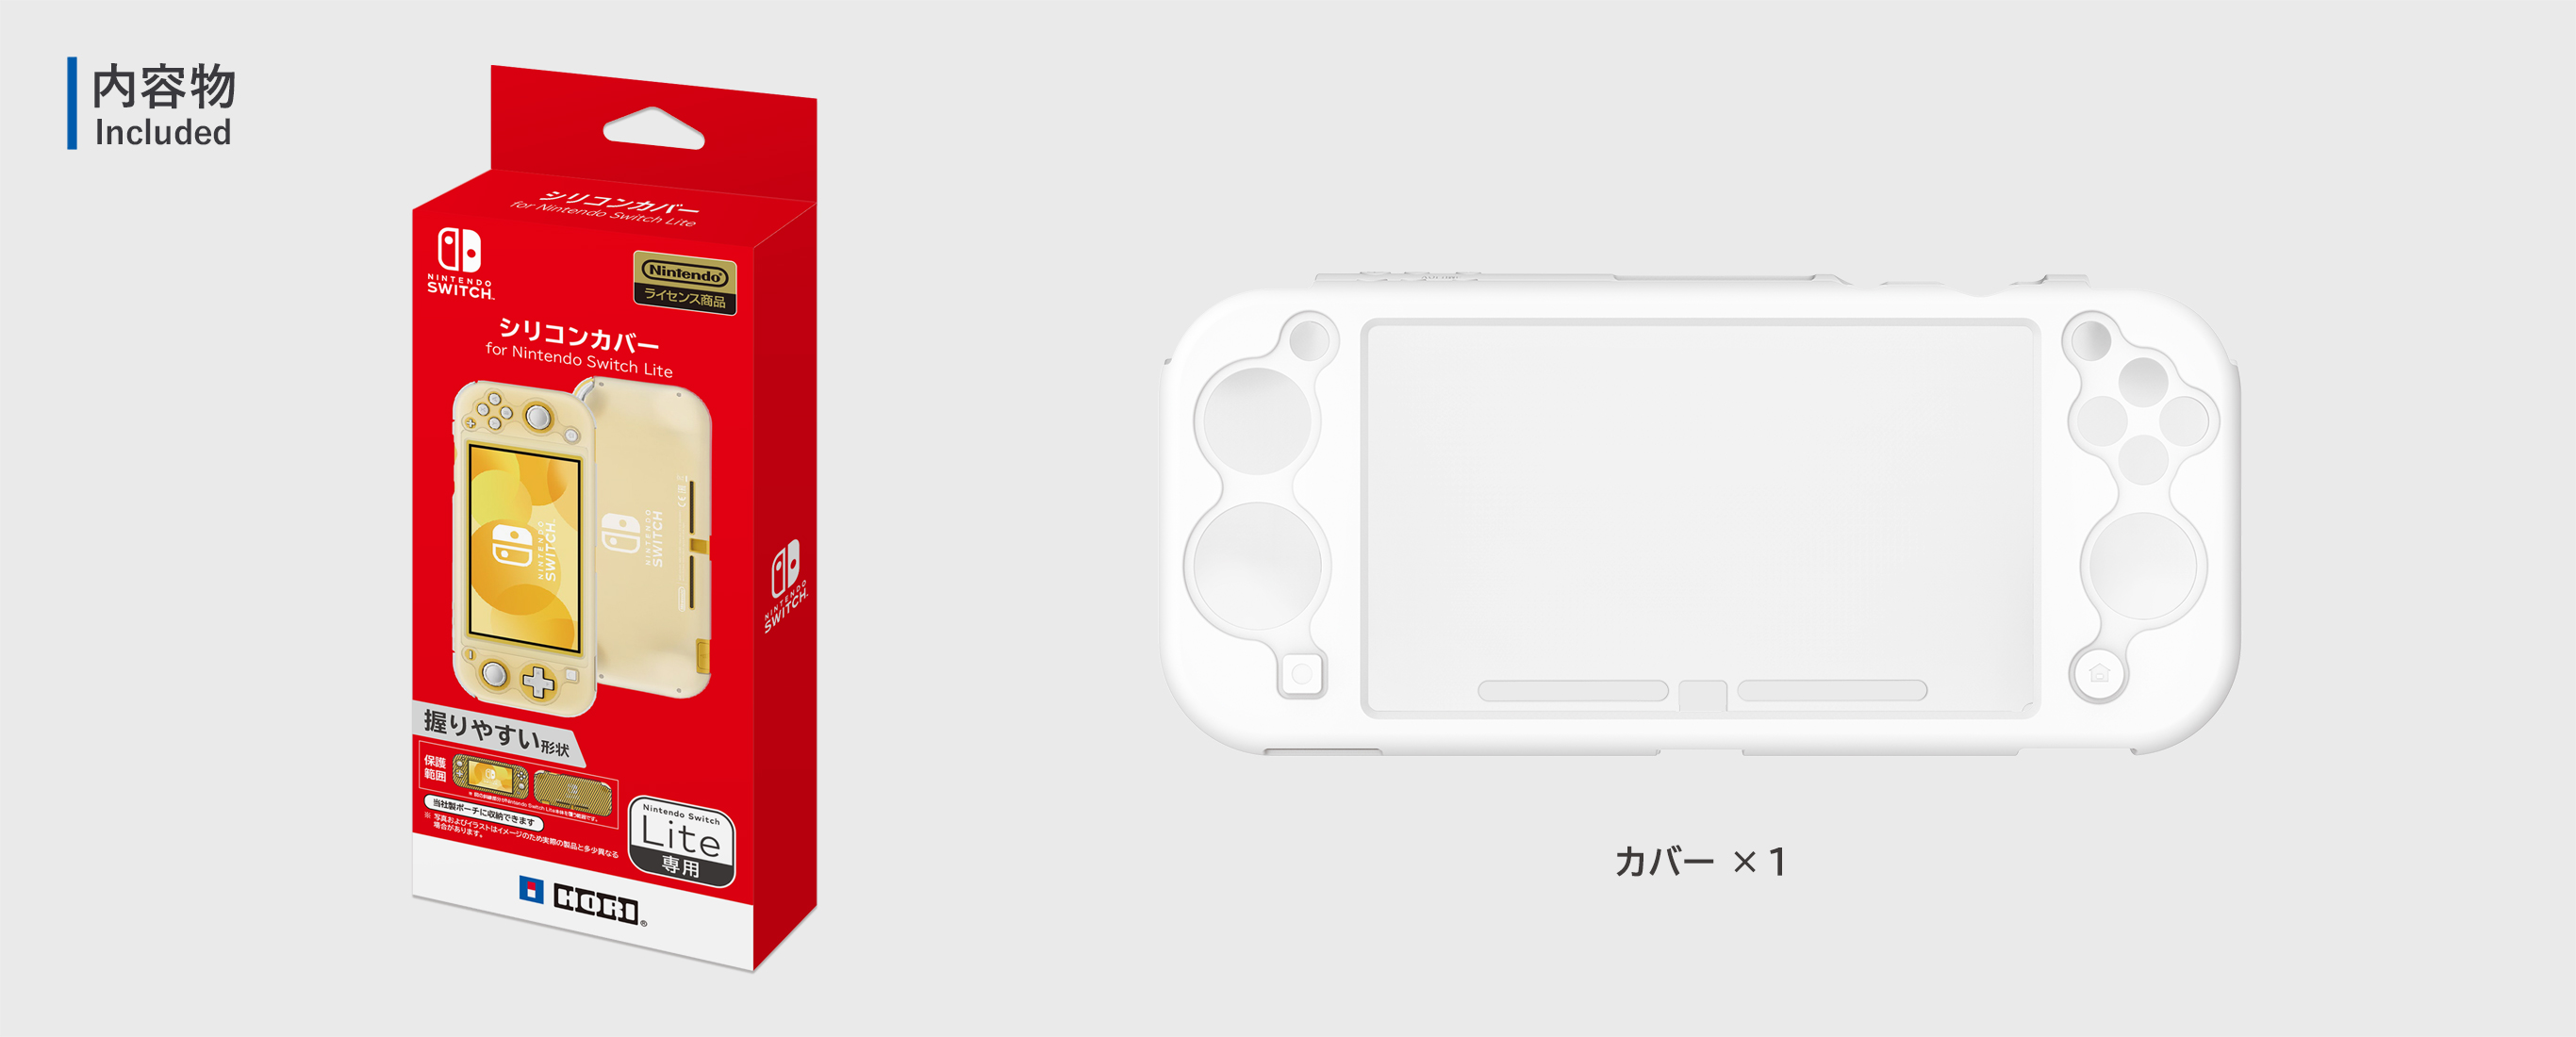 株式会社 Hori シリコンカバー For Nintendo Switch Lite